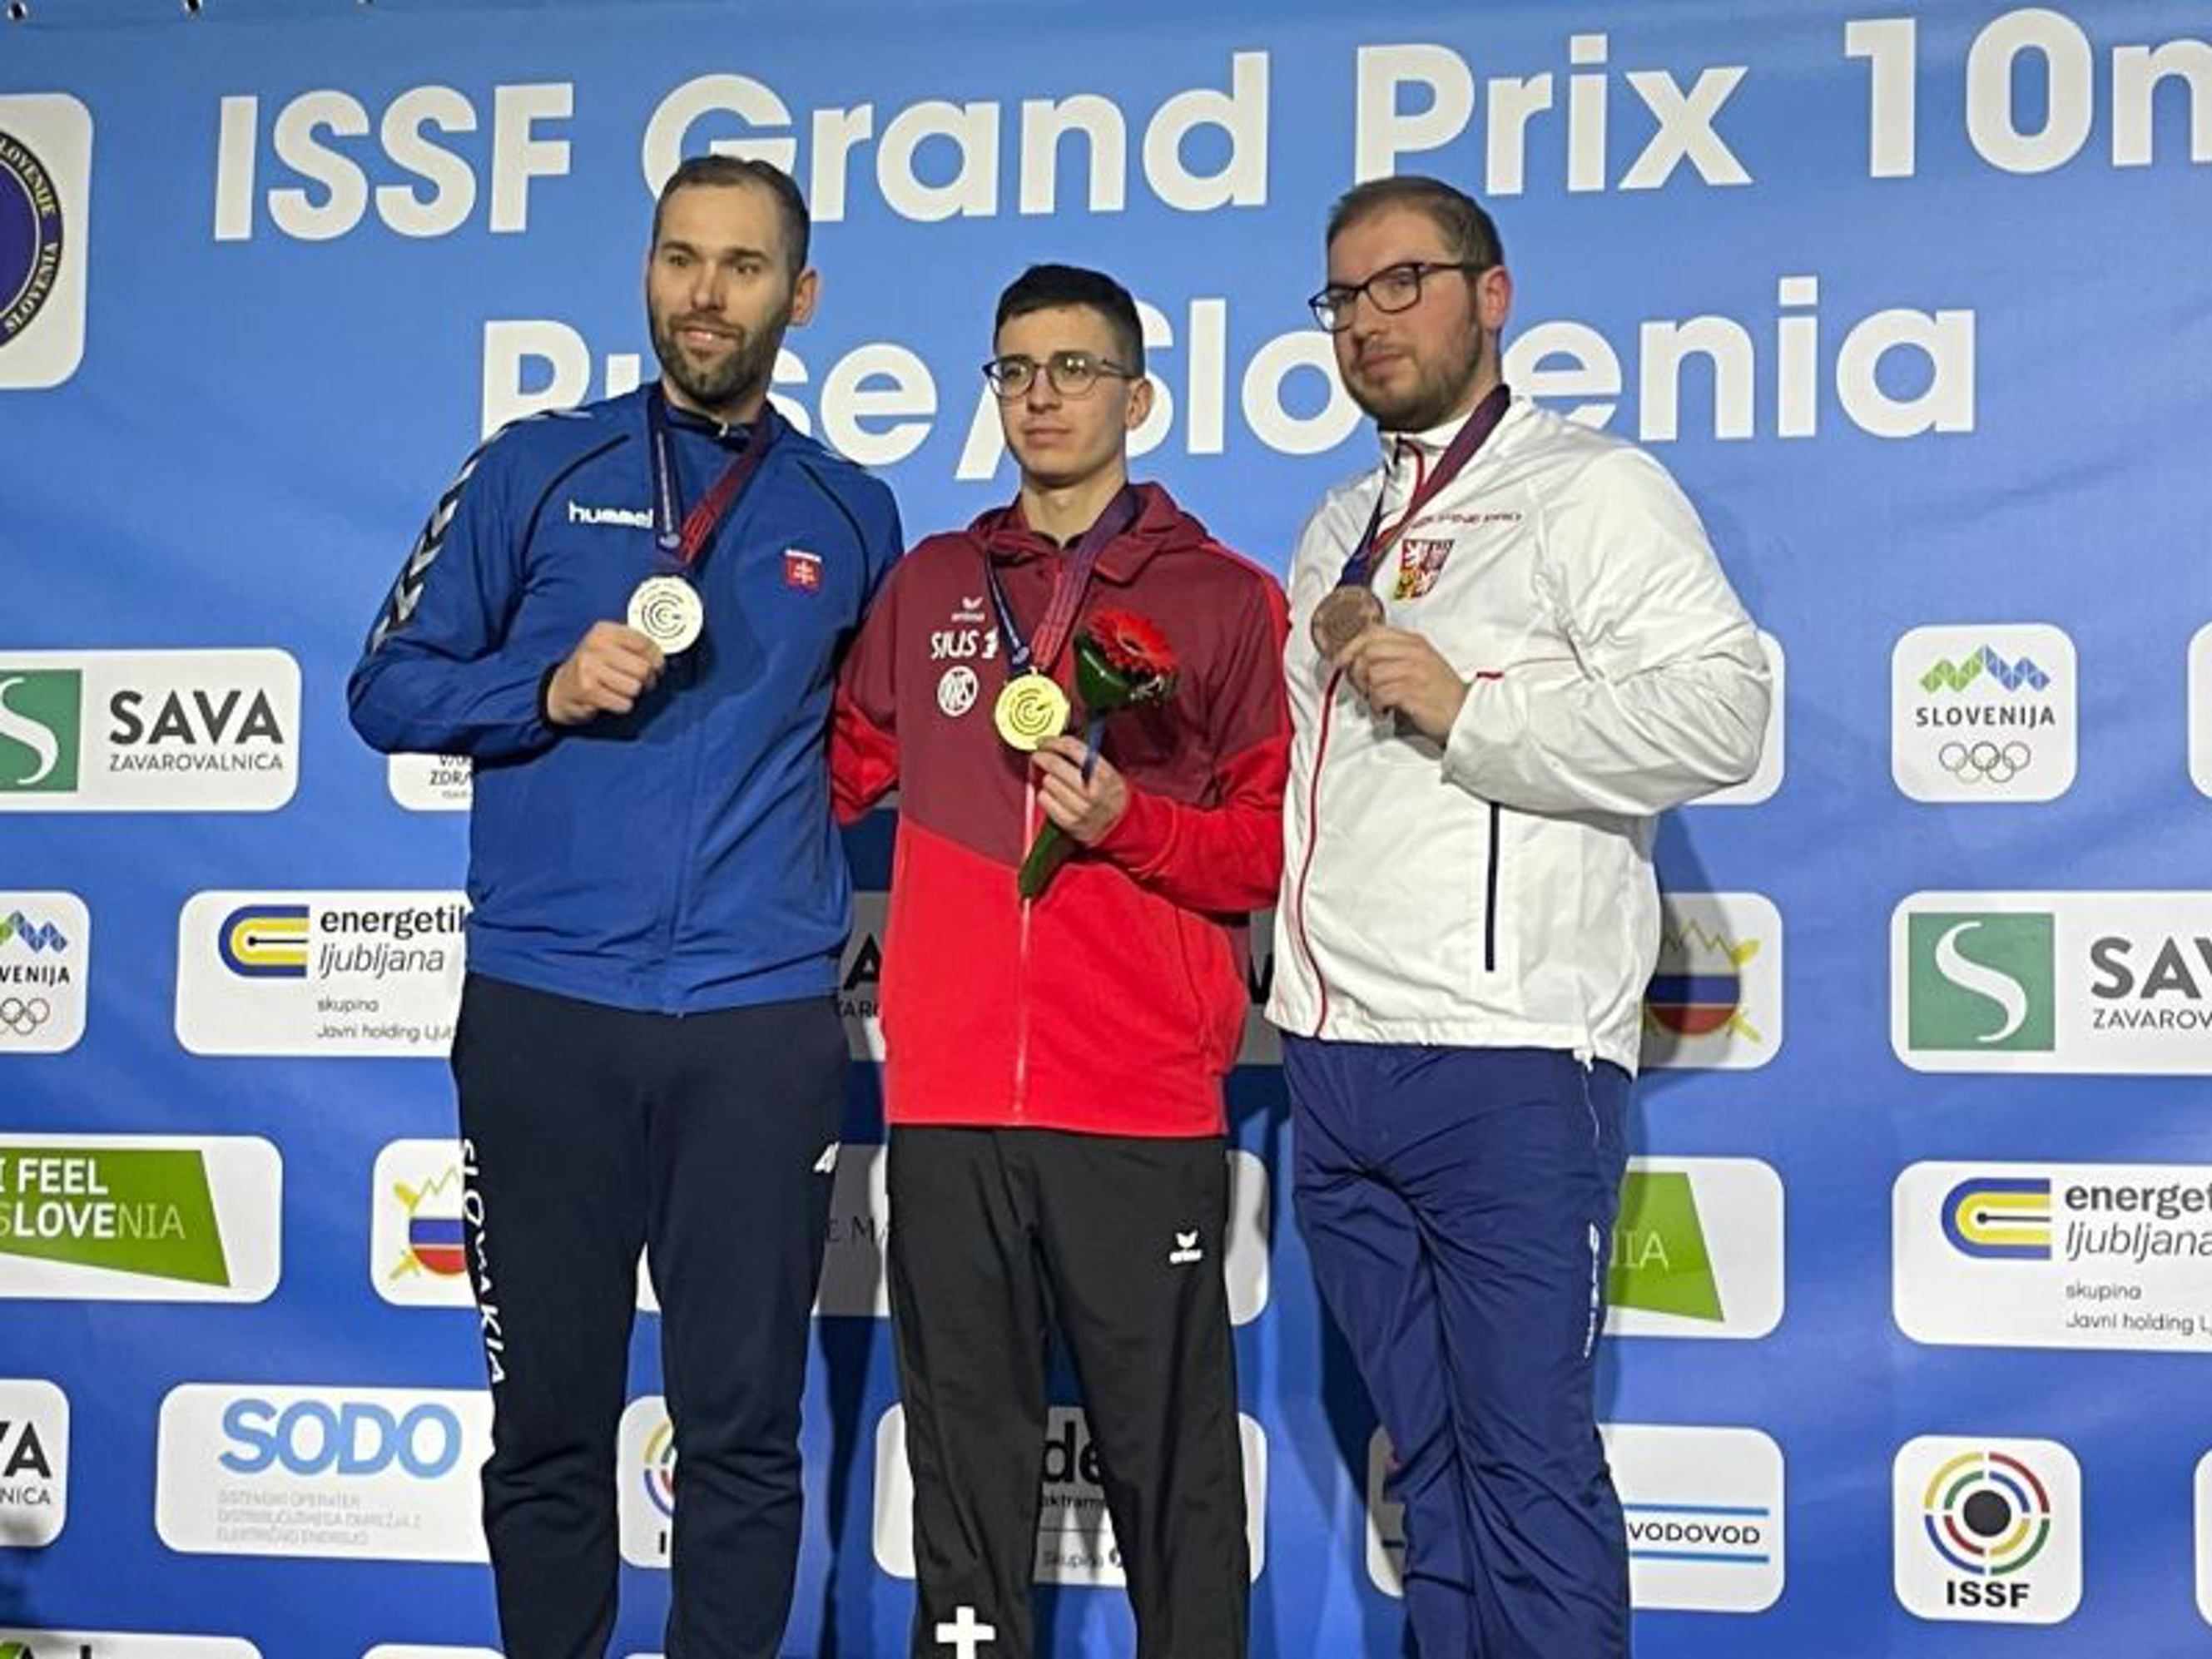 Jason Solari con la medaglia d’oro.